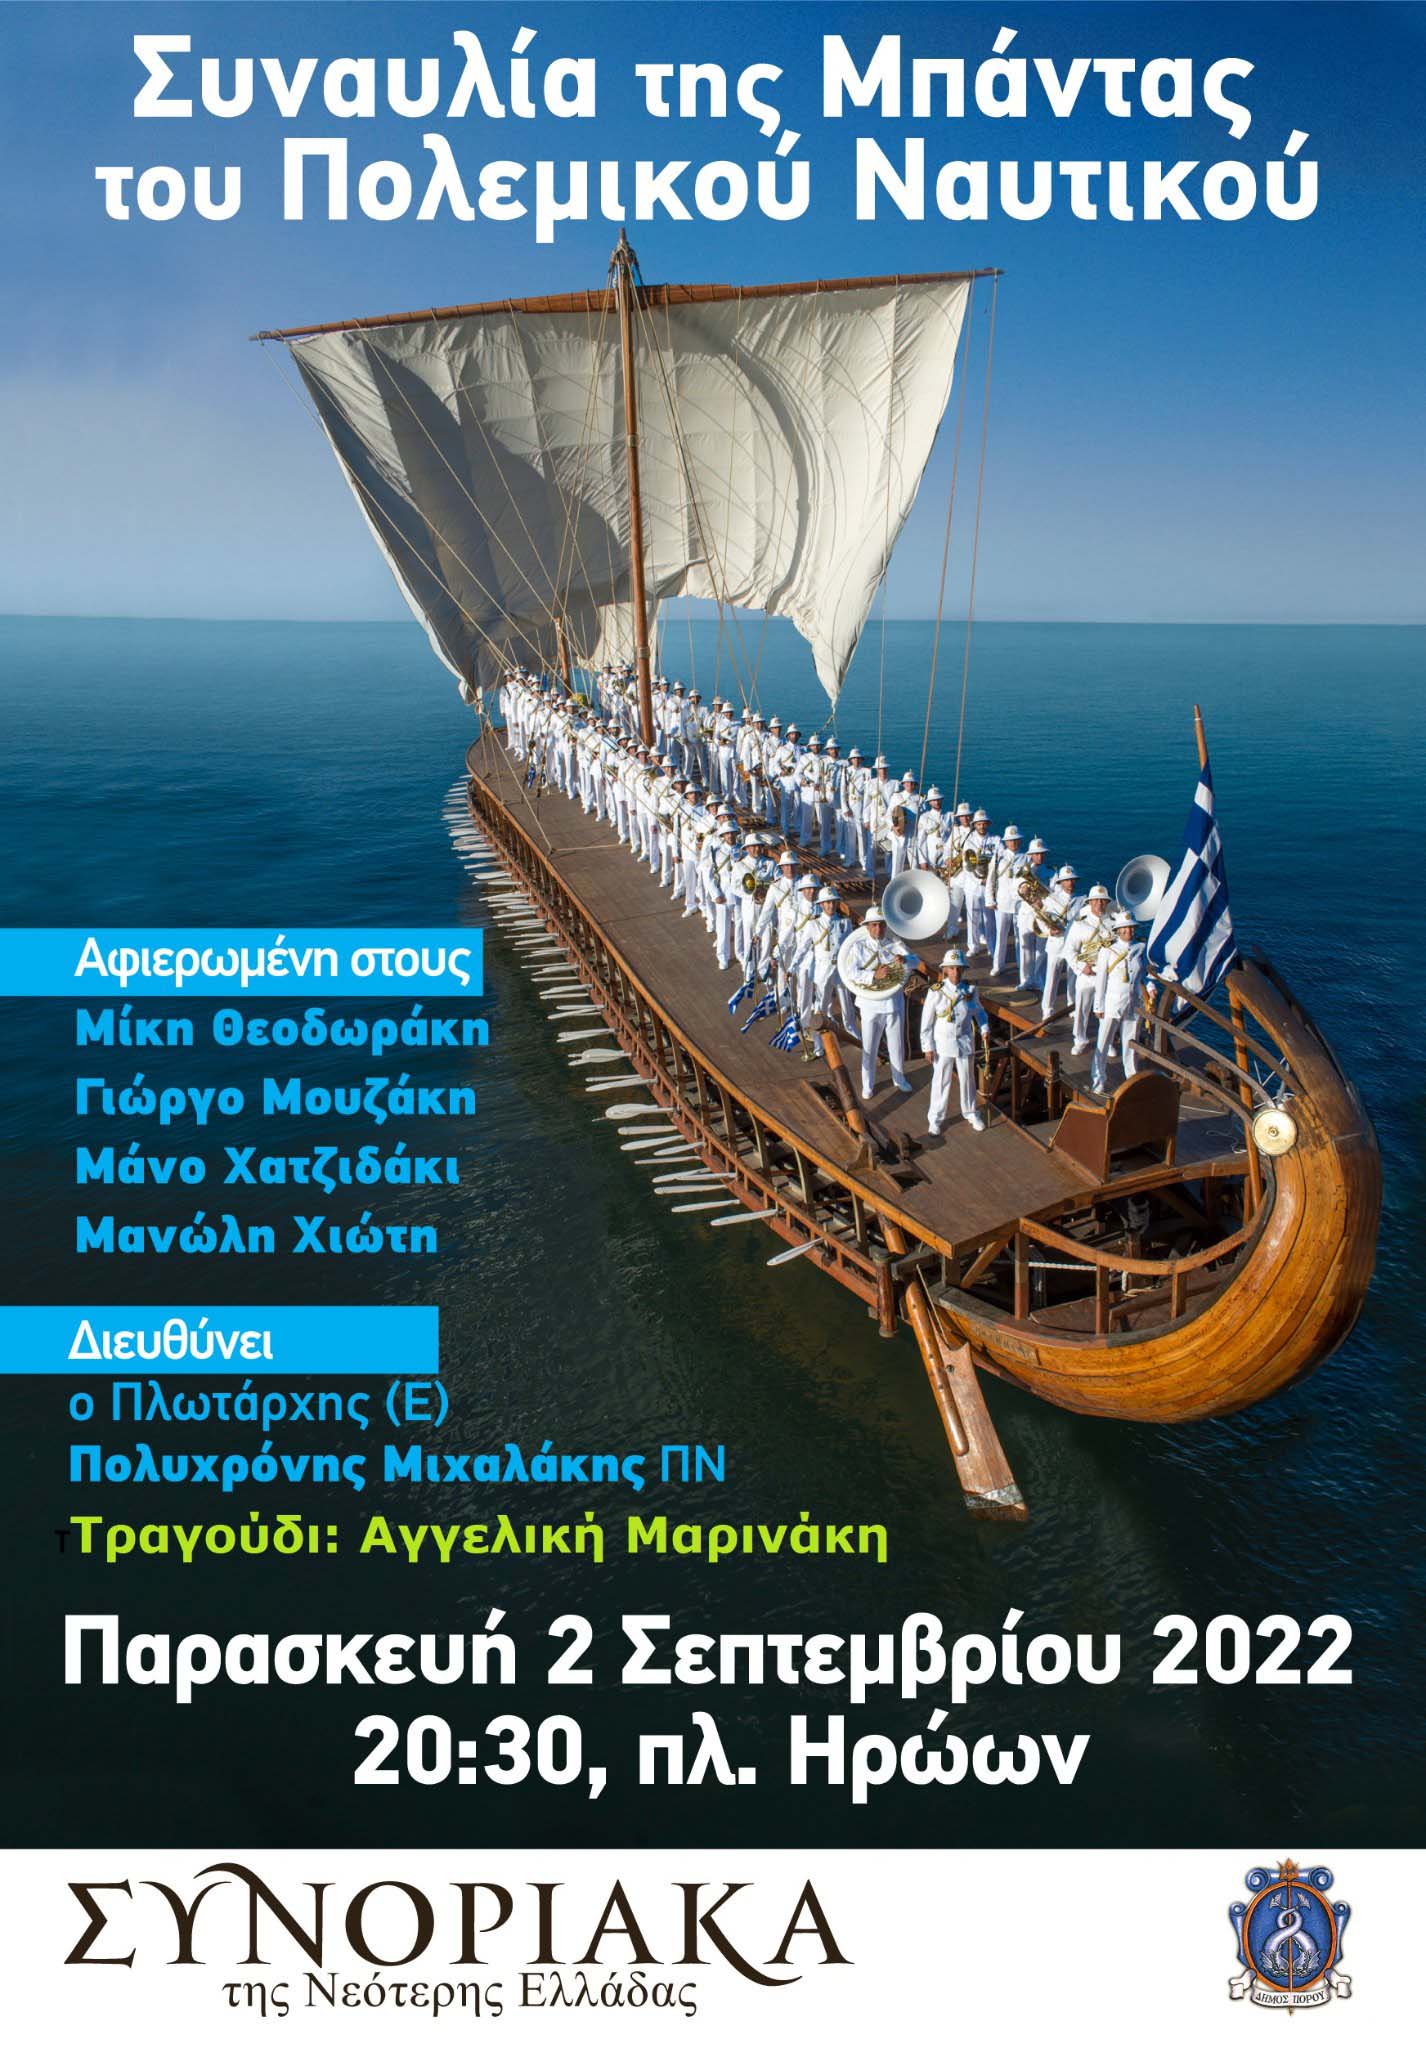 Συνοριακά της Νεότερης Ελλάδας - Συναυλία της Μπάντας του Πολεμικού Ναυτικού